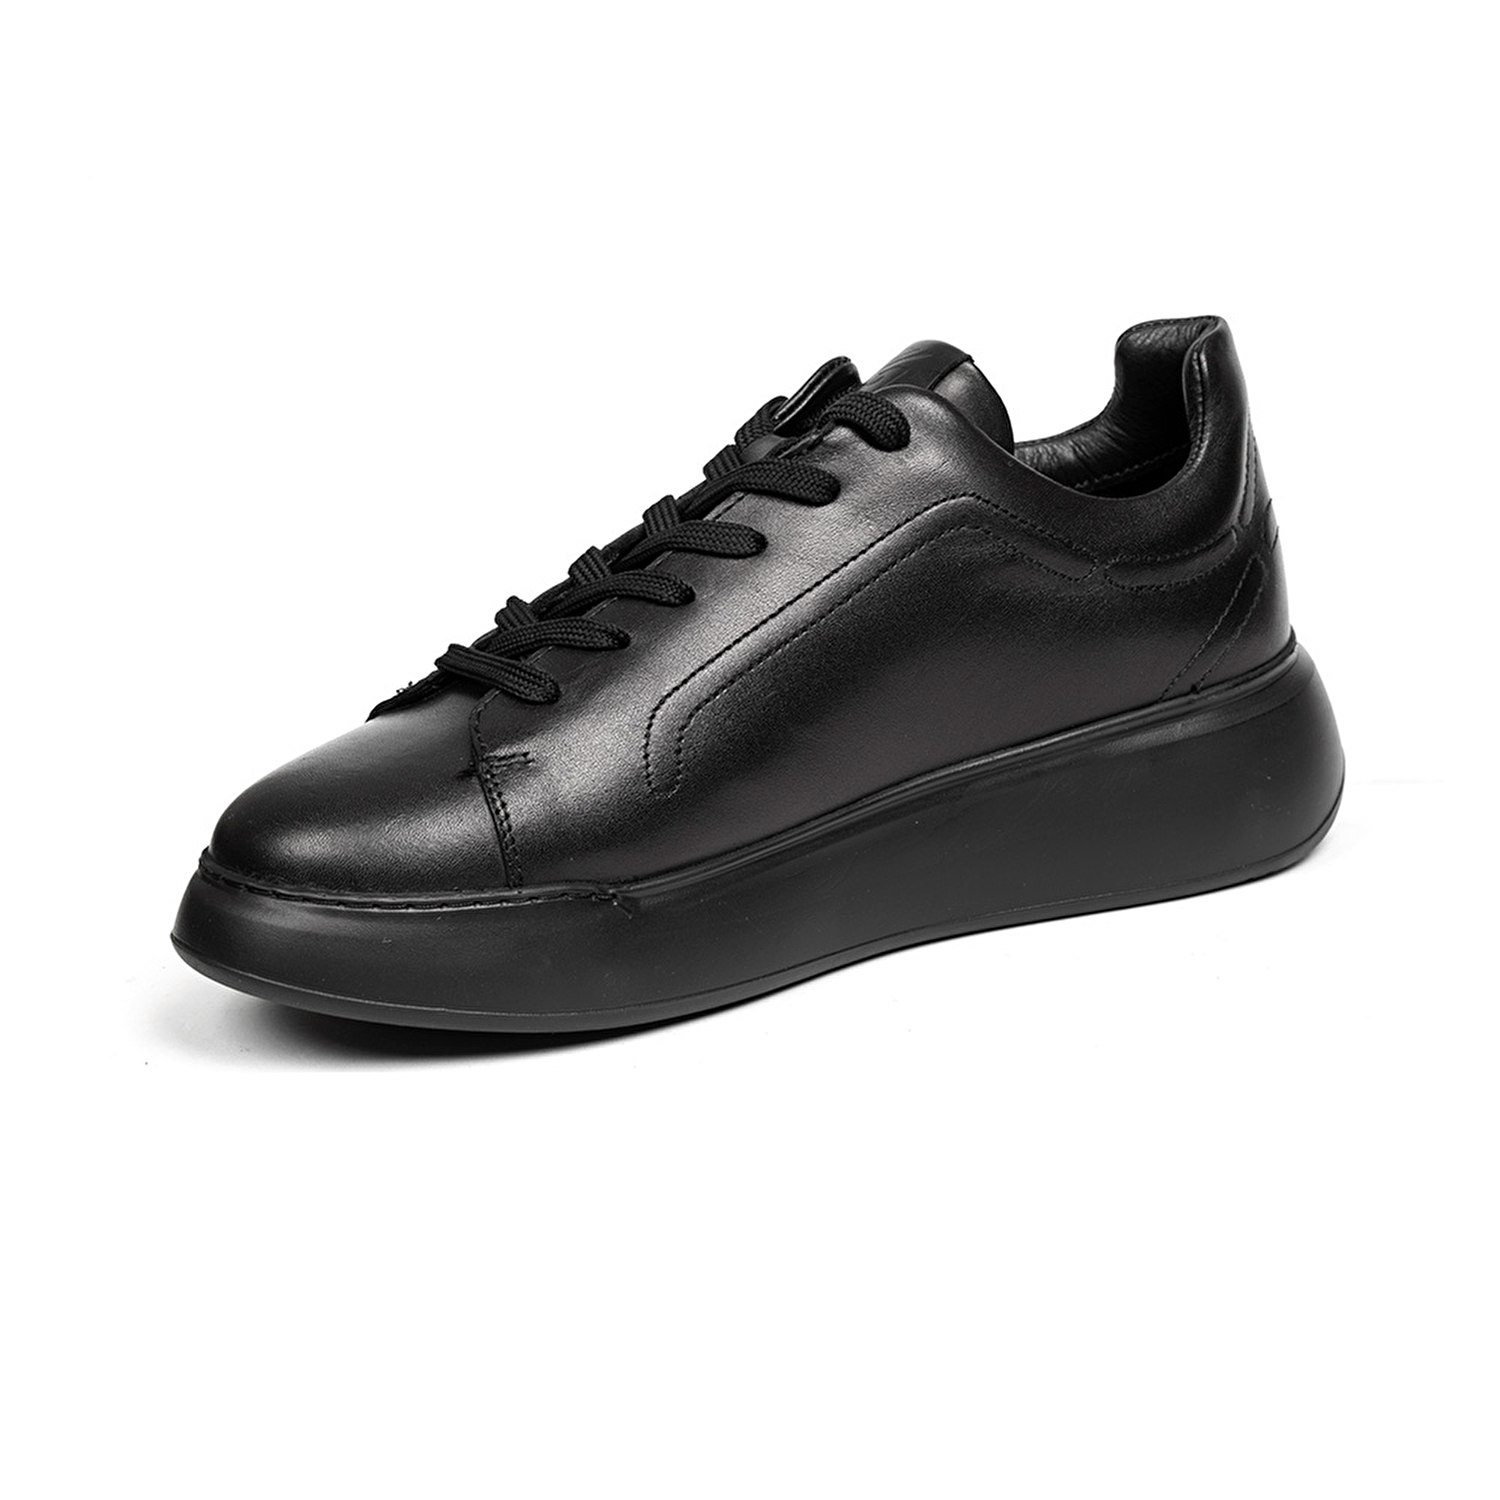 Kadın Siyah Hakiki Deri Sneaker Ayakkabı 2K2SA32150-2